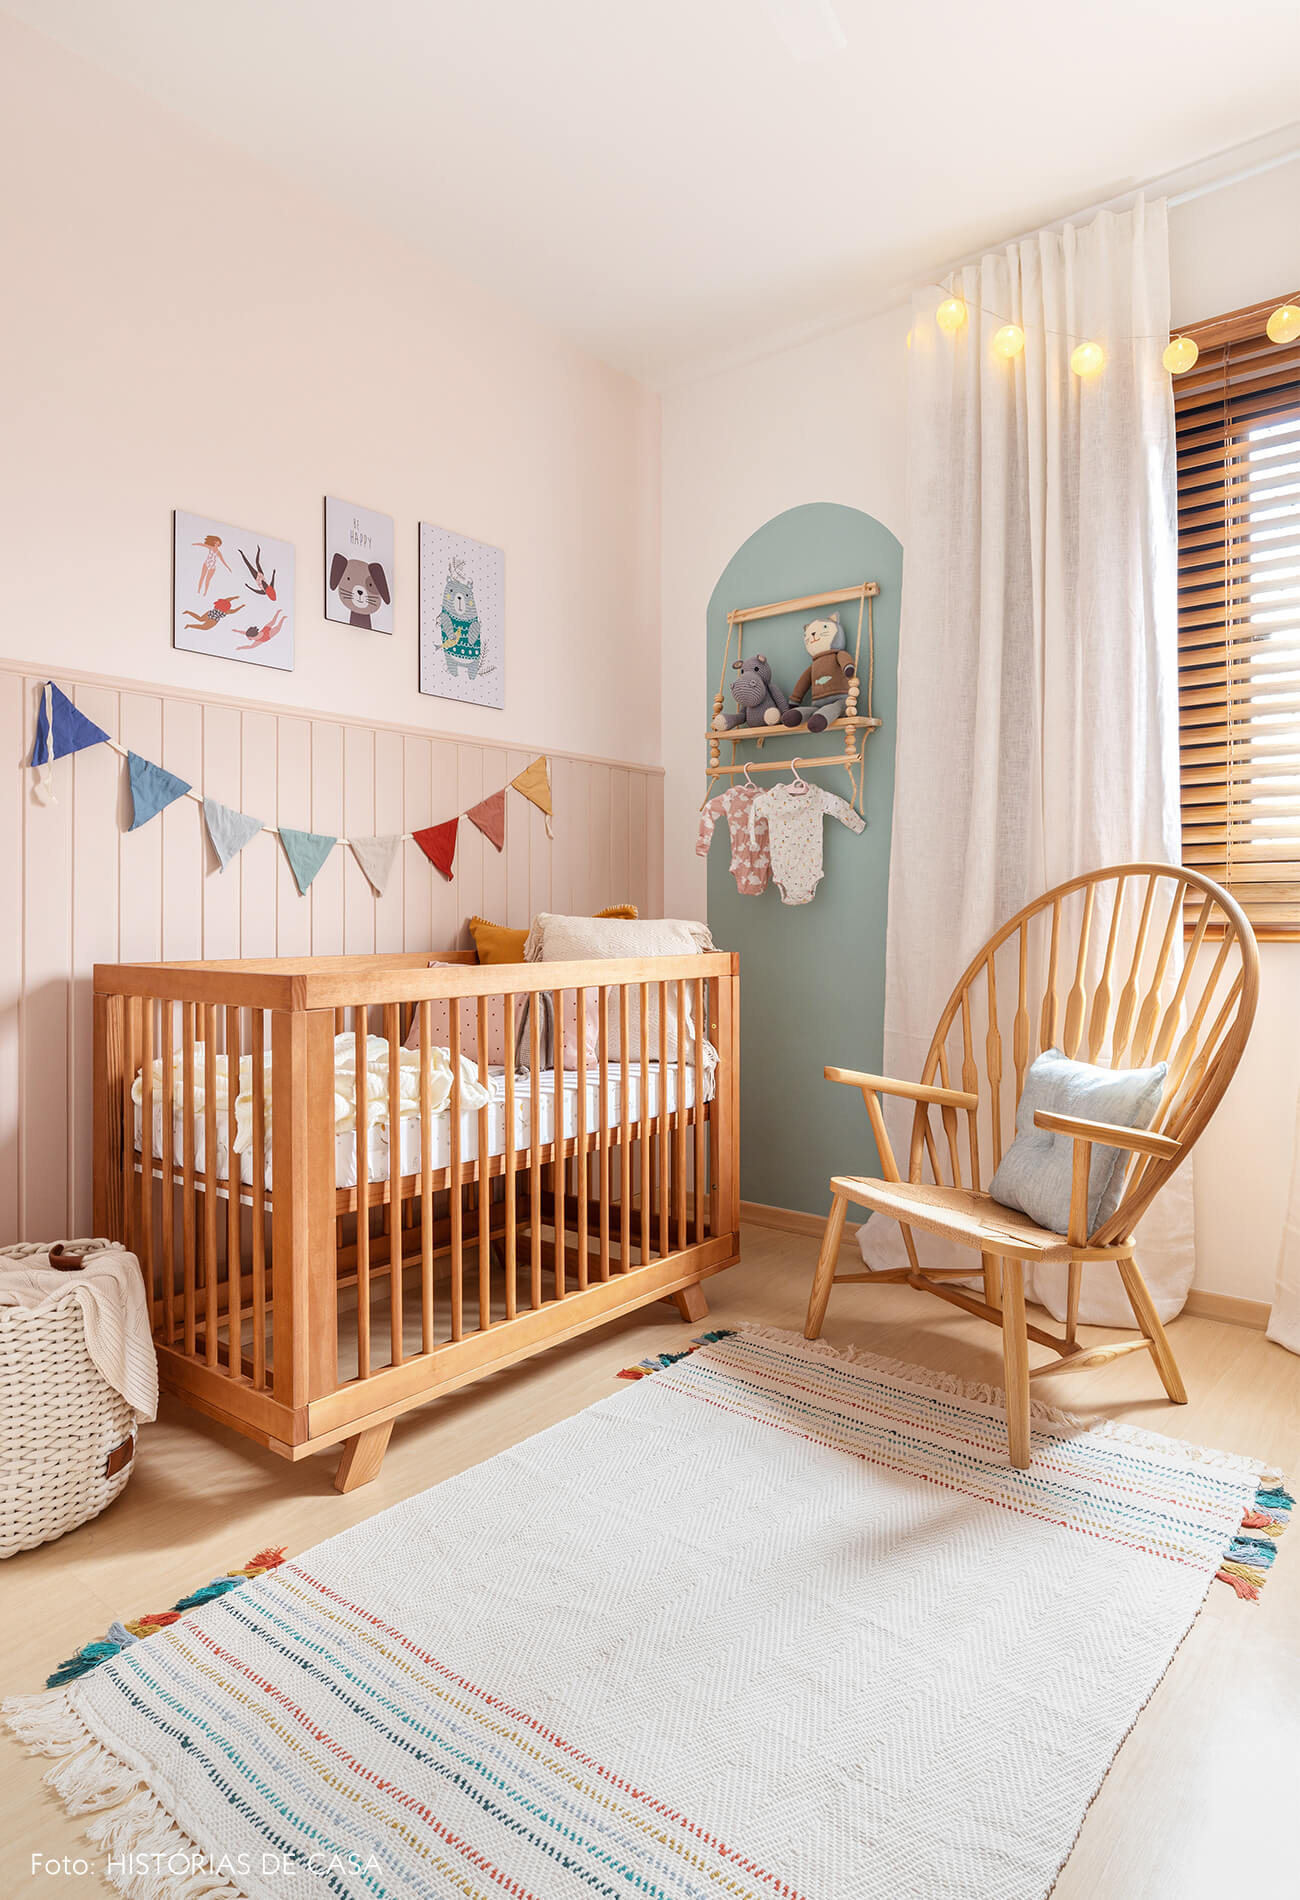 Antes e Depois decoração quarto bebê parede azul, berço de madeira, varal